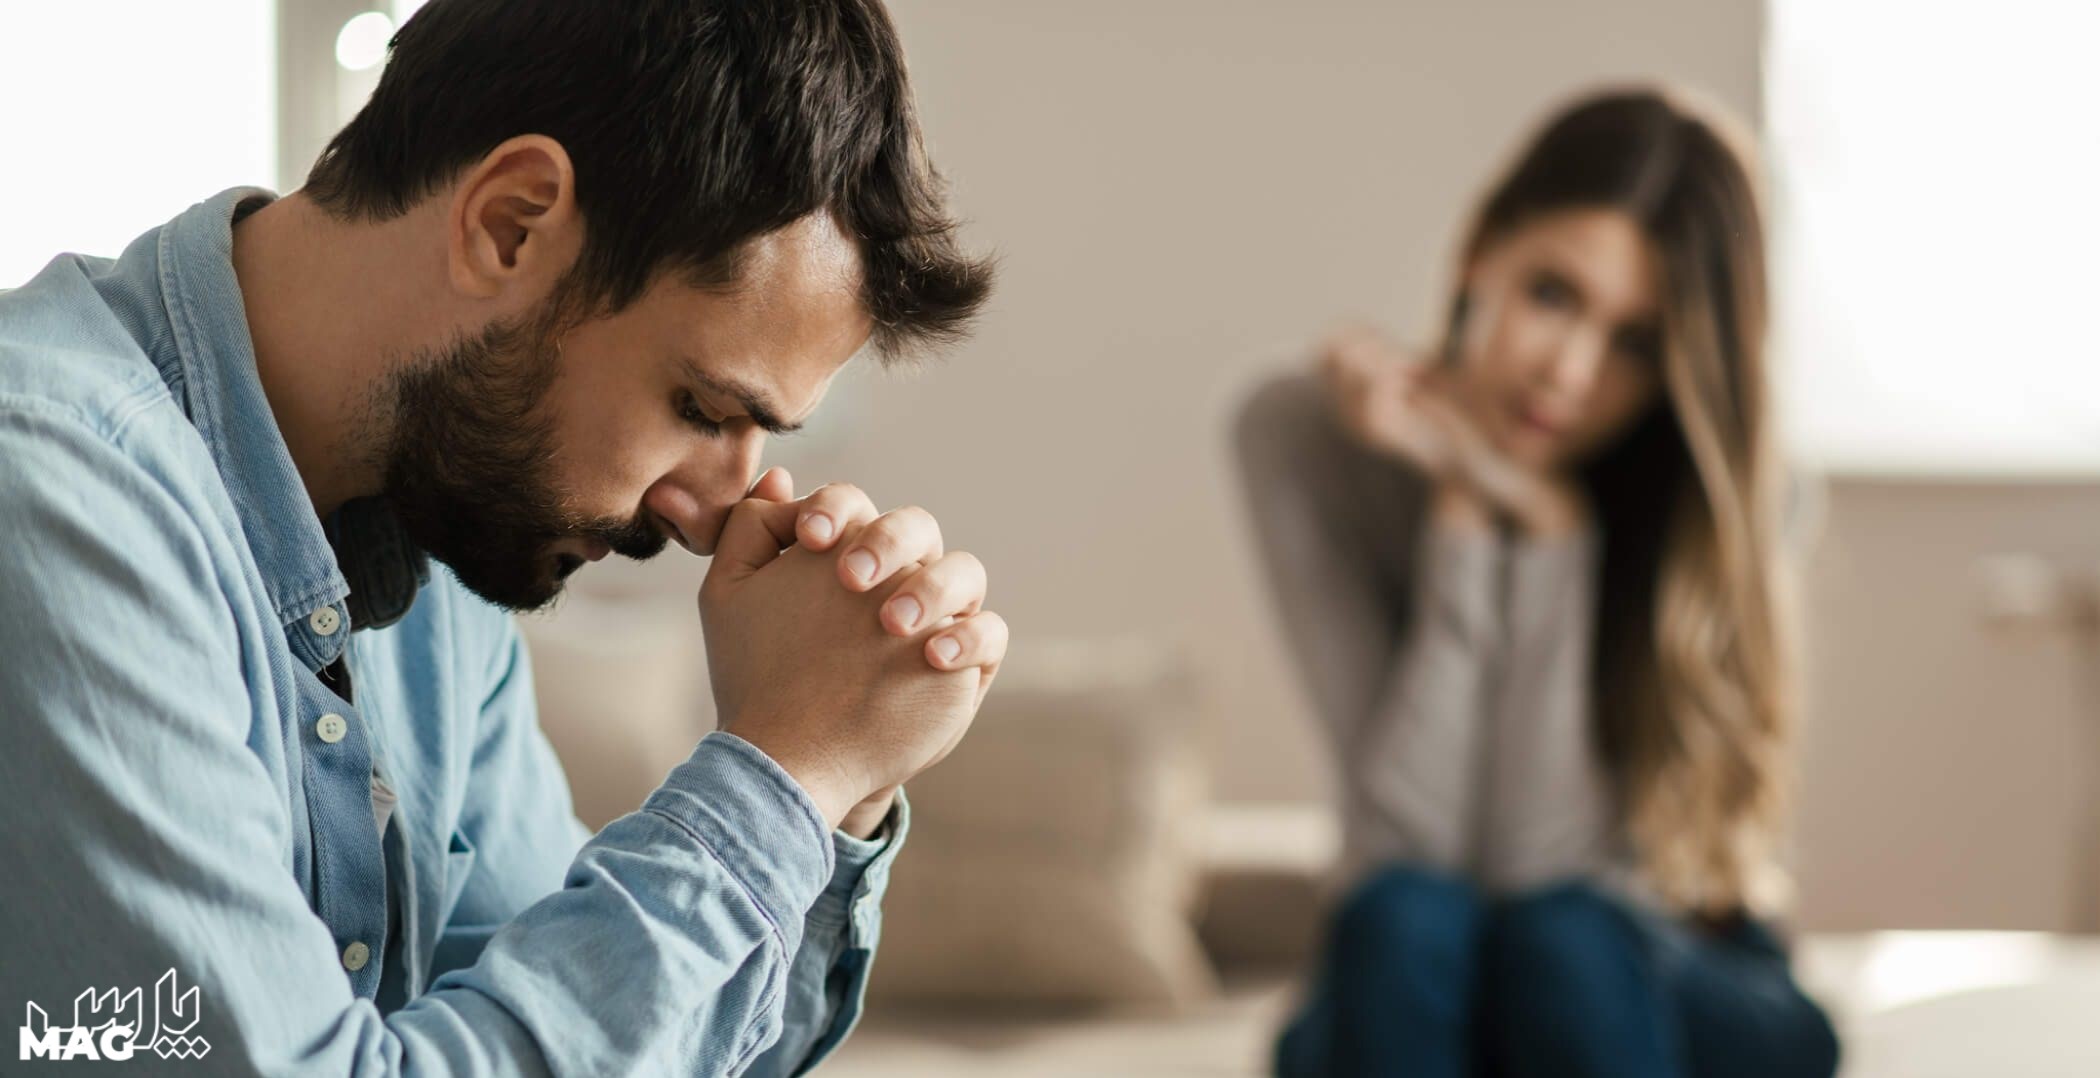 شک به همسر - دعا برای از بین بردن شک